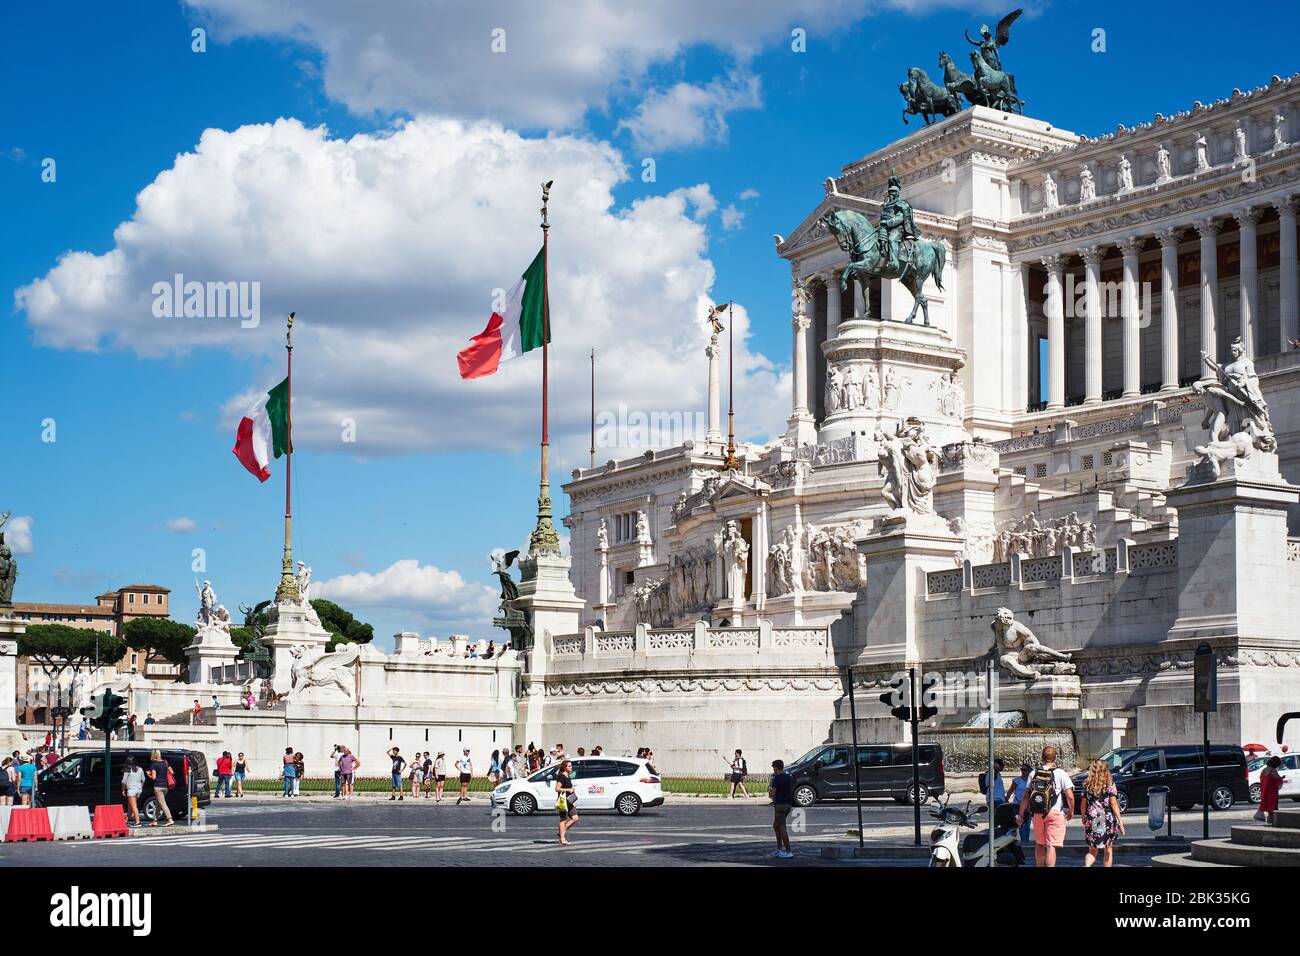 ROME, ITALY - 29 JUNE 2018: view of Altare della Patria, or Il Vittoriano, in the central Rome Stock Photo